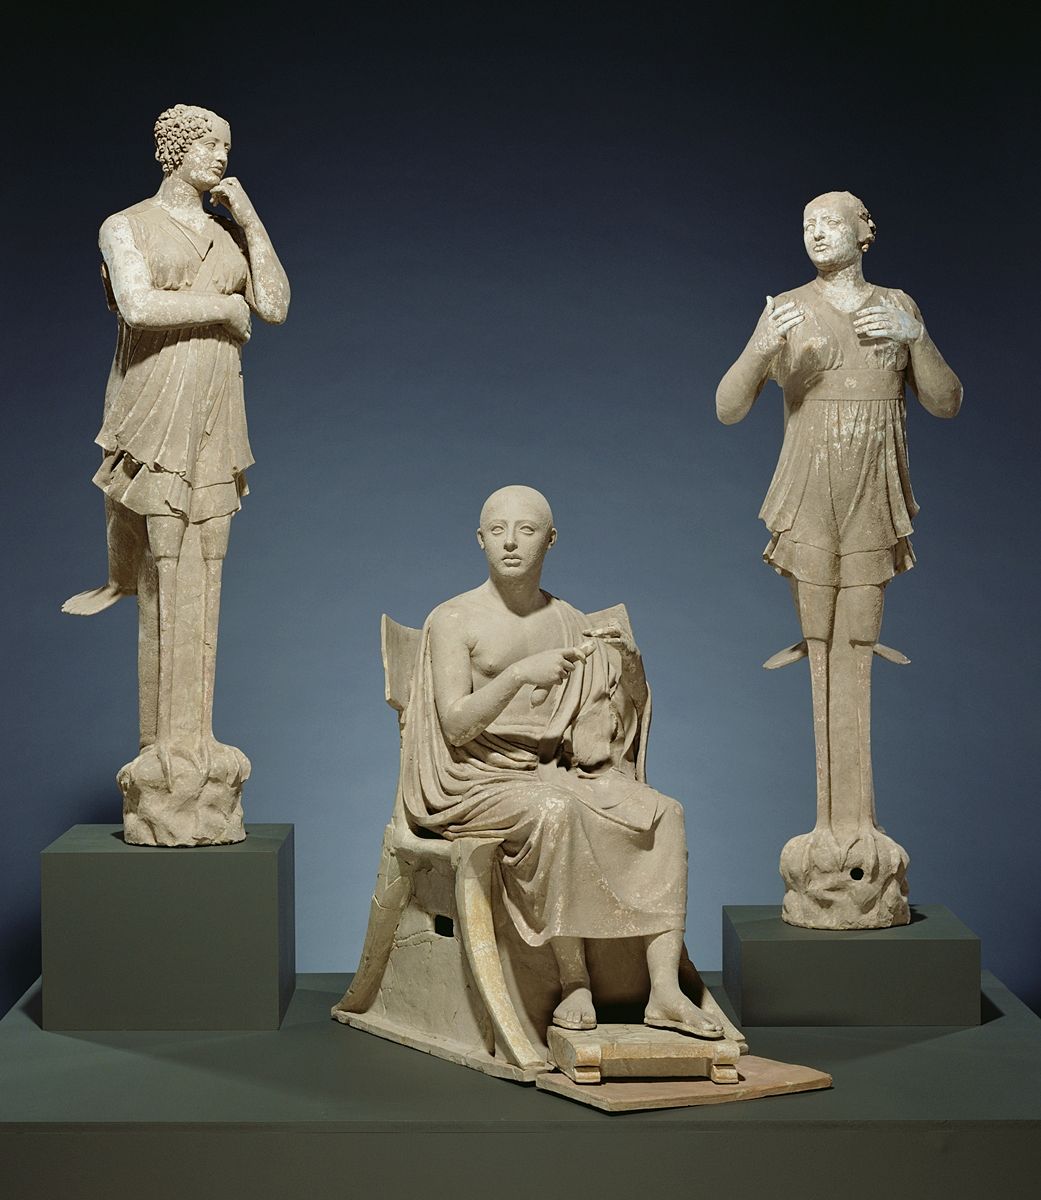 Il gruppo scultoreo di Orfeo e le sirene è rientrato in Italia. Entrerà nella collezione del MArTA